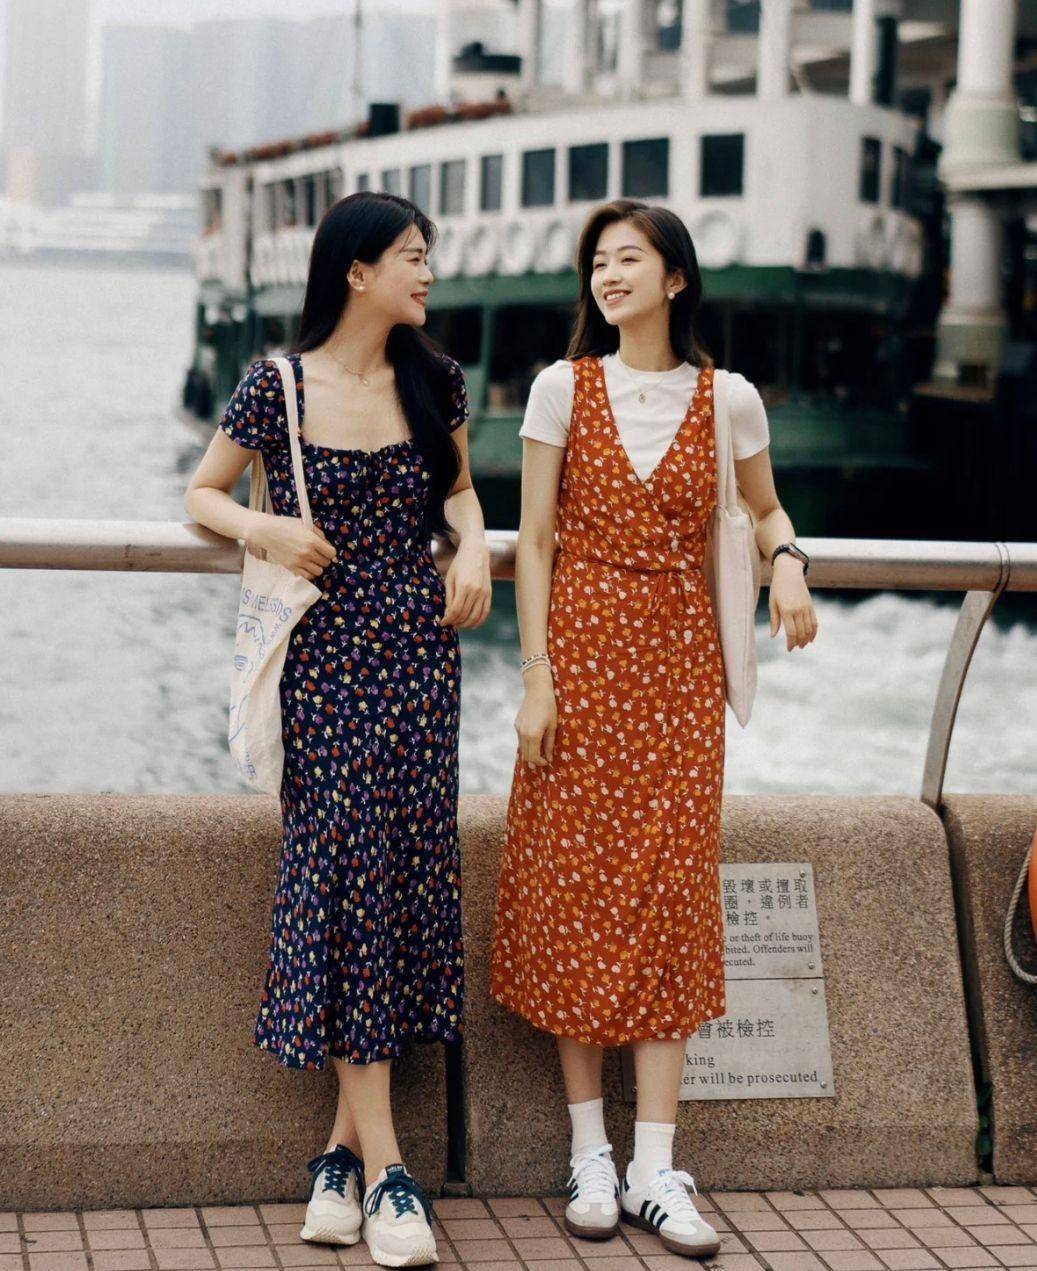 到了香港，发现满大街都是“长裙平底鞋”，出乎意料的时髦。